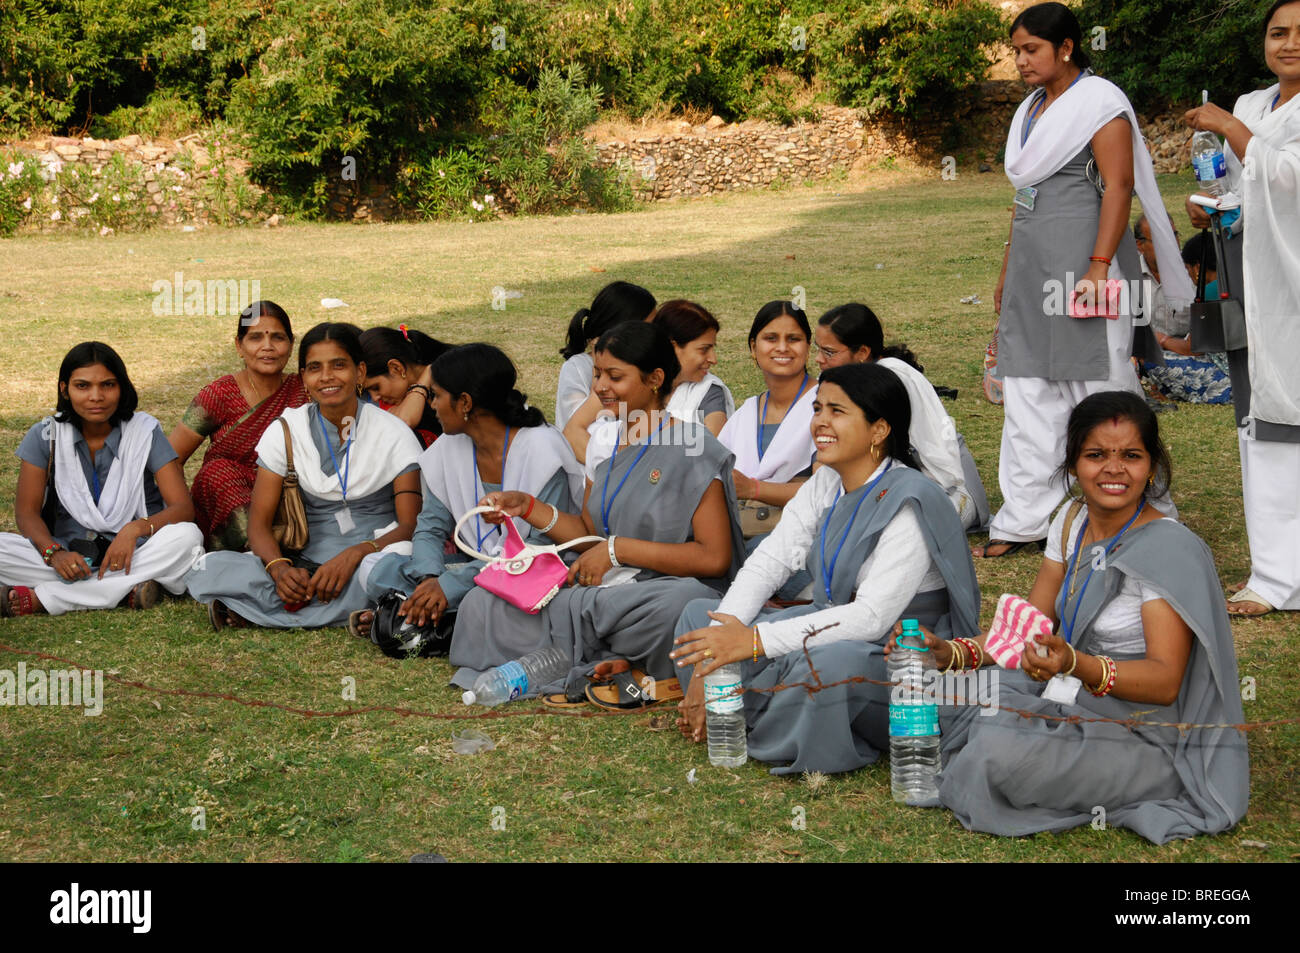 Les jeunes femmes indiennes, les étudiants, dans un parc près de Kota, Rajasthan, Inde du Nord, l'Asie Banque D'Images